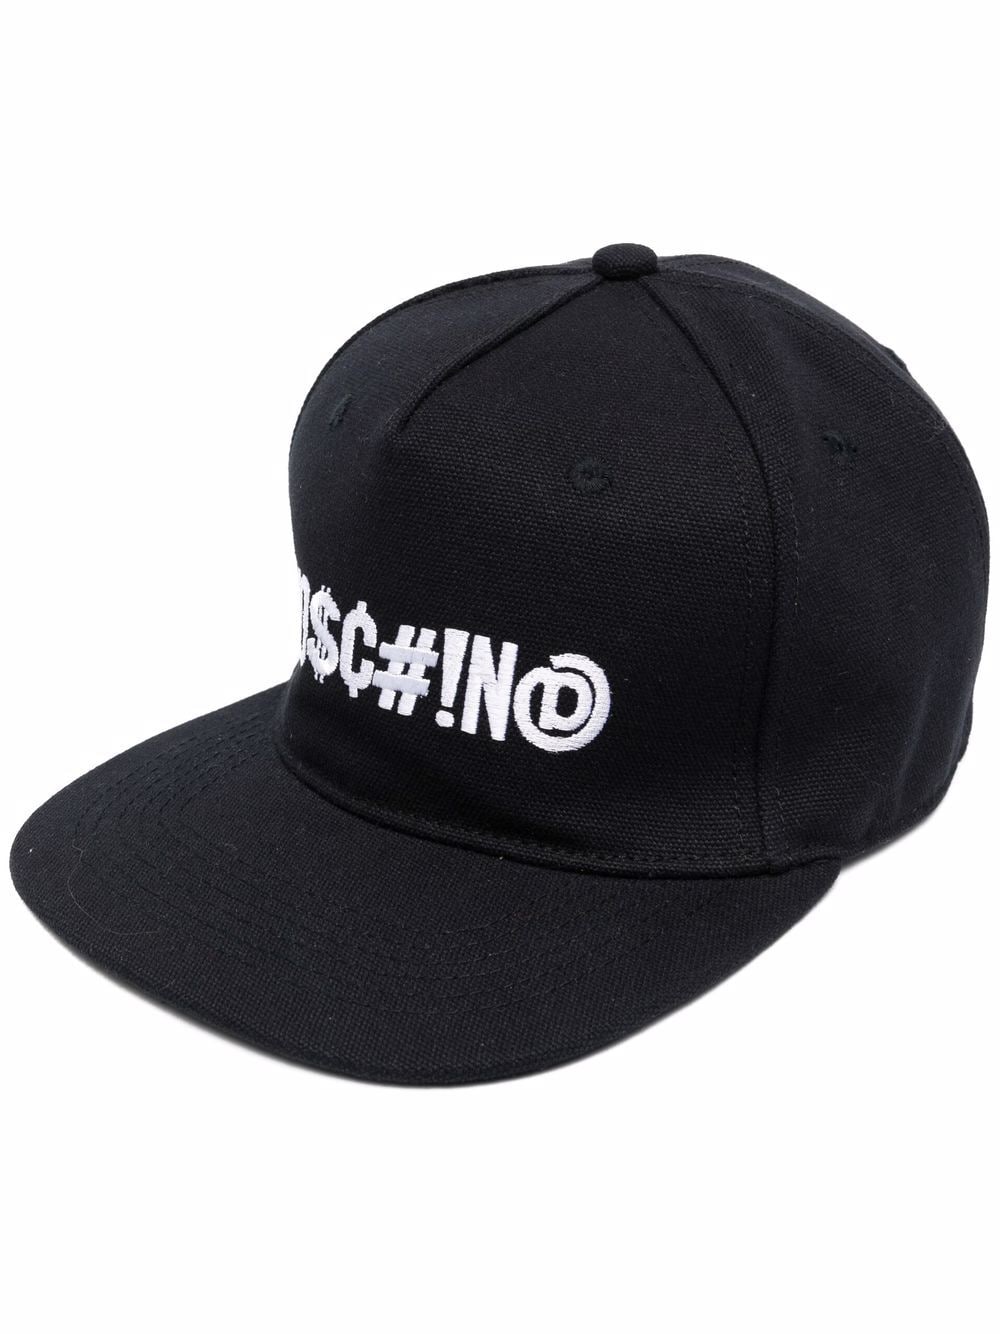 фото Moschino шестипанельная кепка с вышитым логотипом